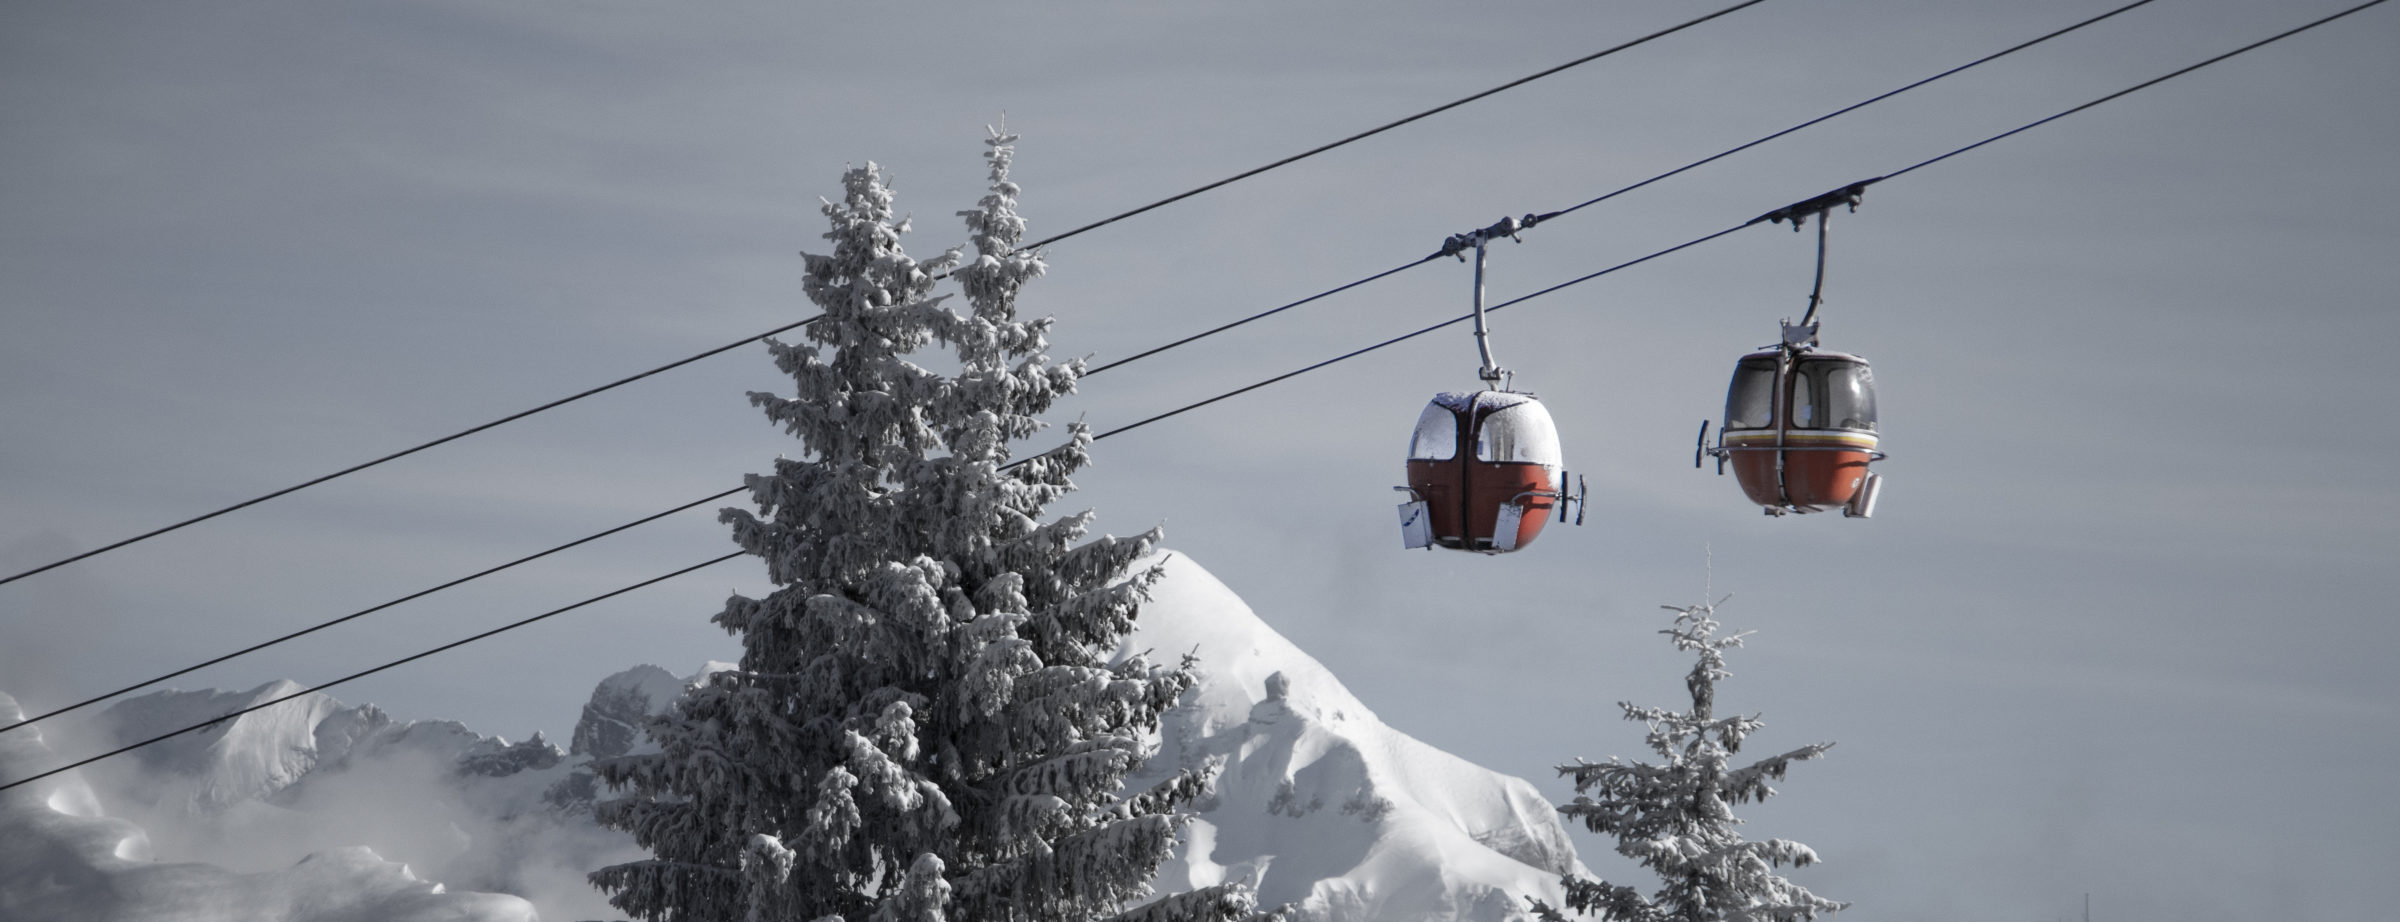 Ckecklist & Top Tips Ski Samoëns – Les Gets – Avoriaz